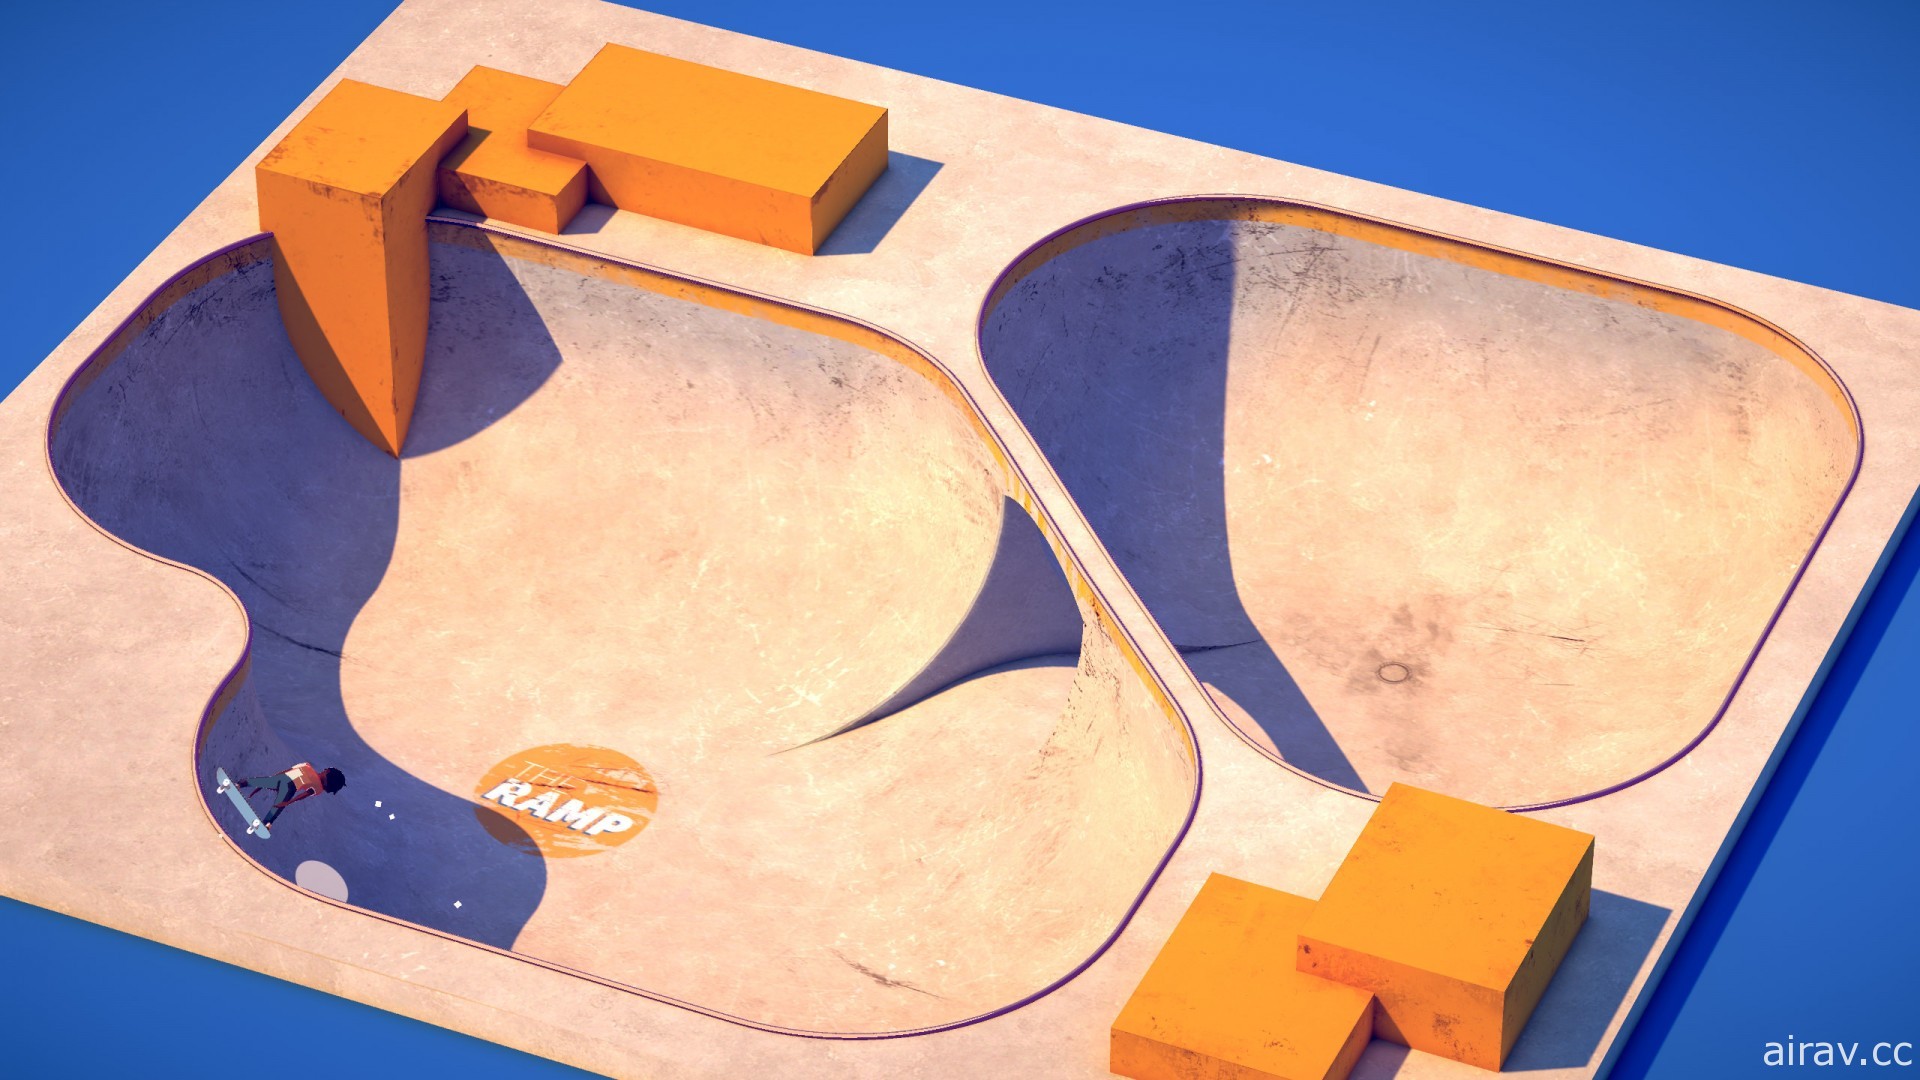 简朴的滑板题材新作《坡道大挑战》上市 享受在大小坡道飞跃的快感！